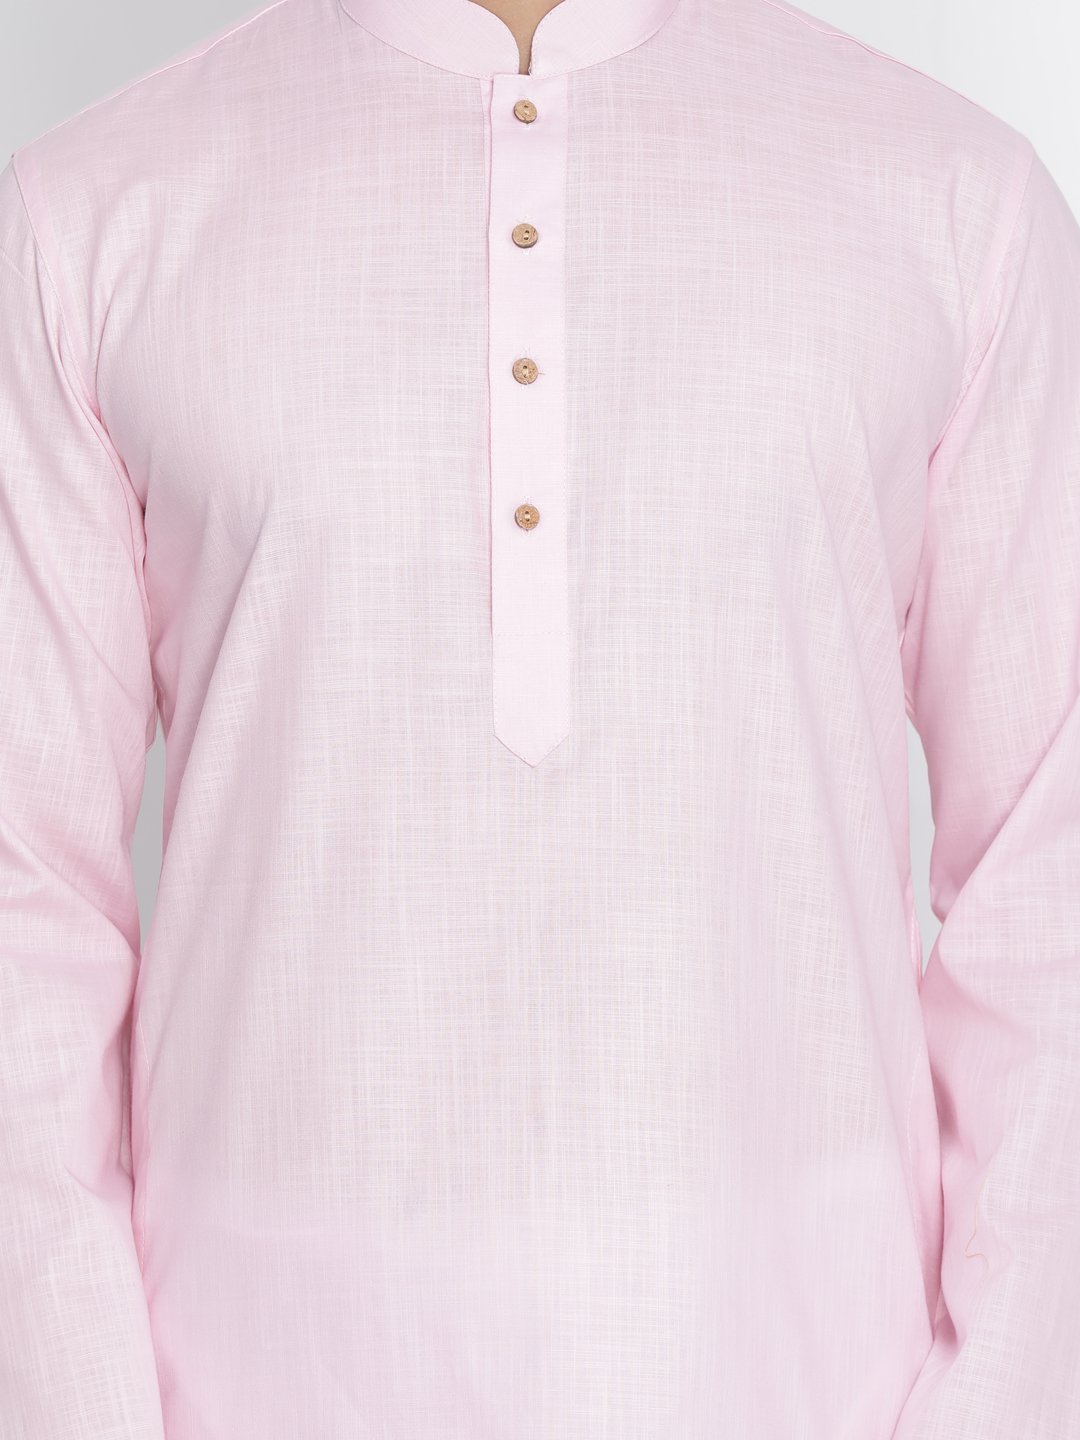 Men's Pink Cotton Kurta and Pyjama Set - Vastramay